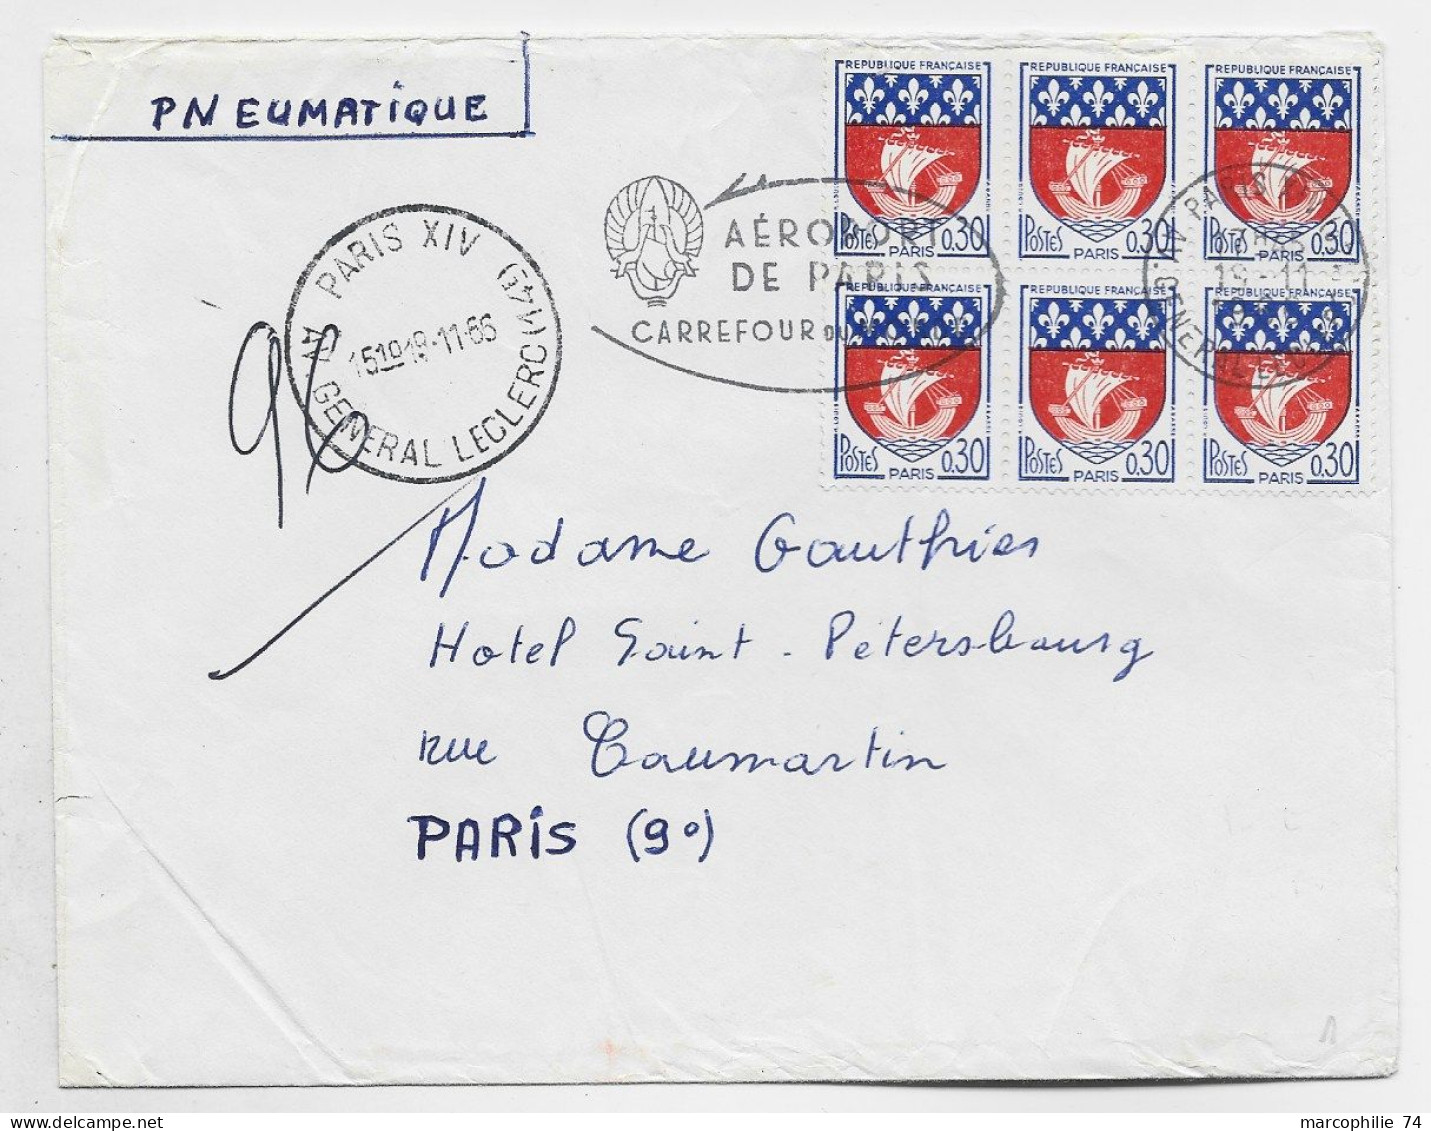 FRANCE BLASON 30C PARIS BLOC DE 6 PNEUMATIQUE MECANIQUE PARIS XIV AV GENERAL LECLERC 9.11.1965  AU TARIF - 1941-66 Stemmi E Stendardi